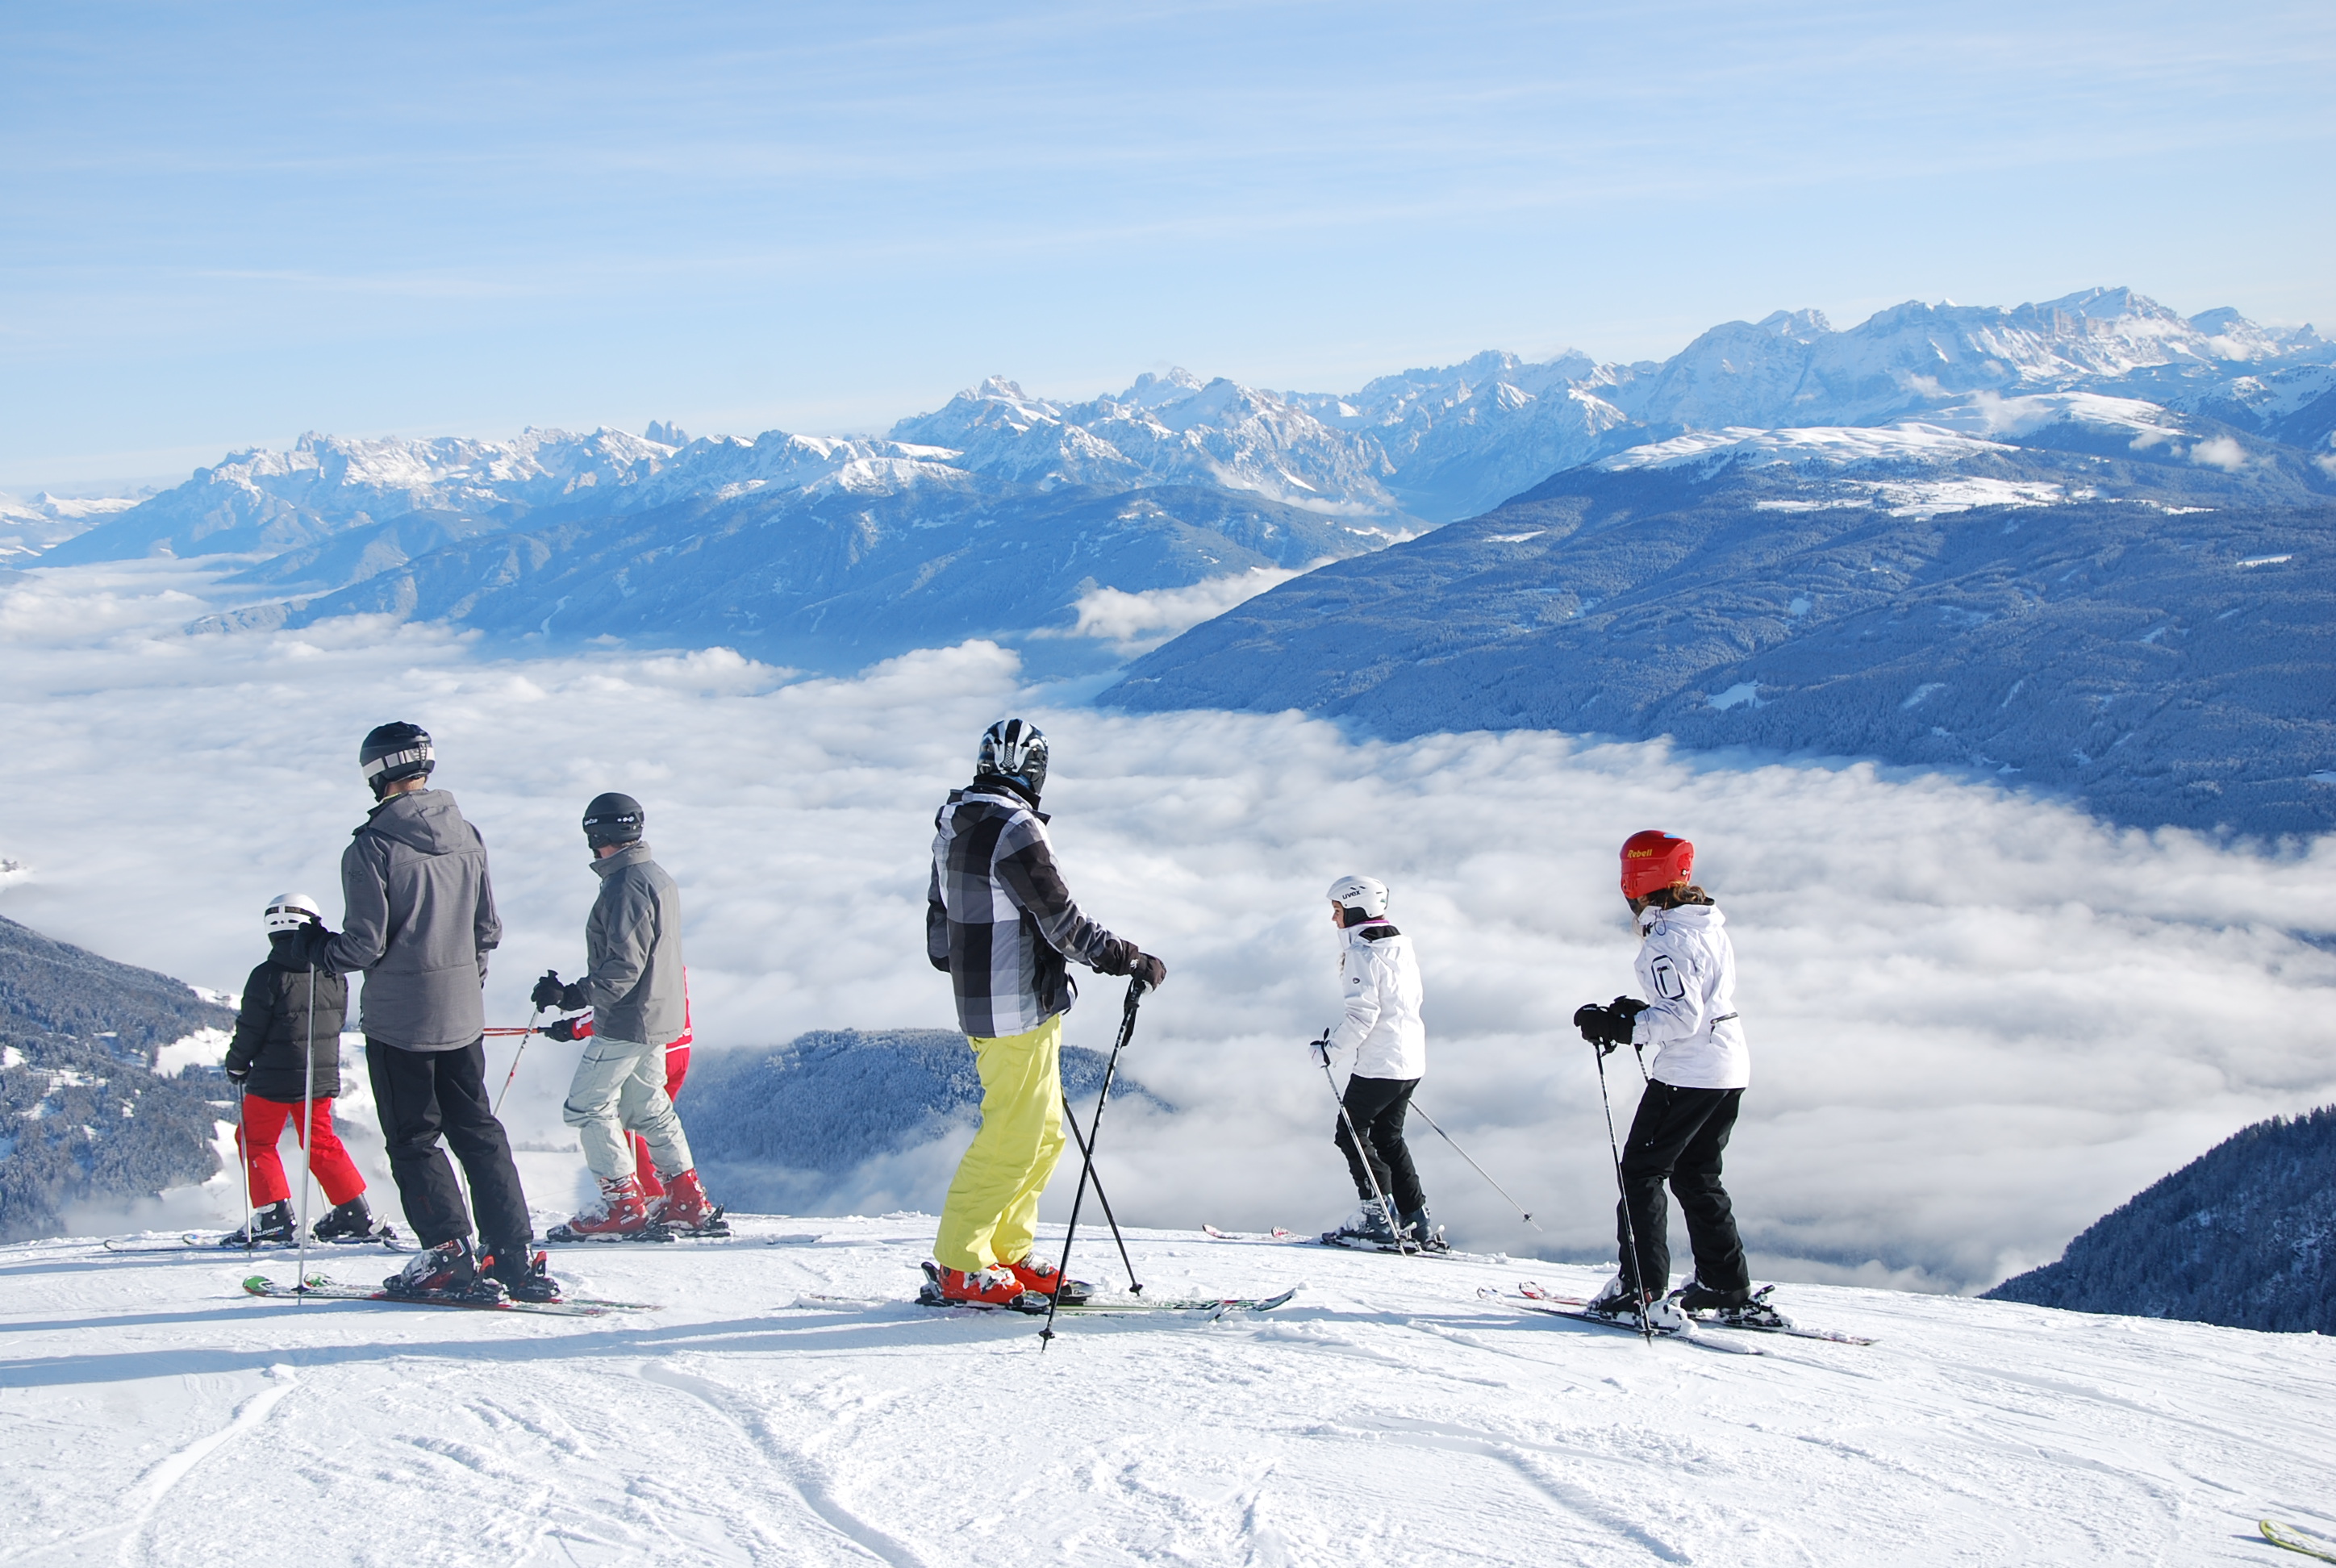 Settimana Bianca Hotel Ski Pass Scuola Sci in poche parole All Inclusive!